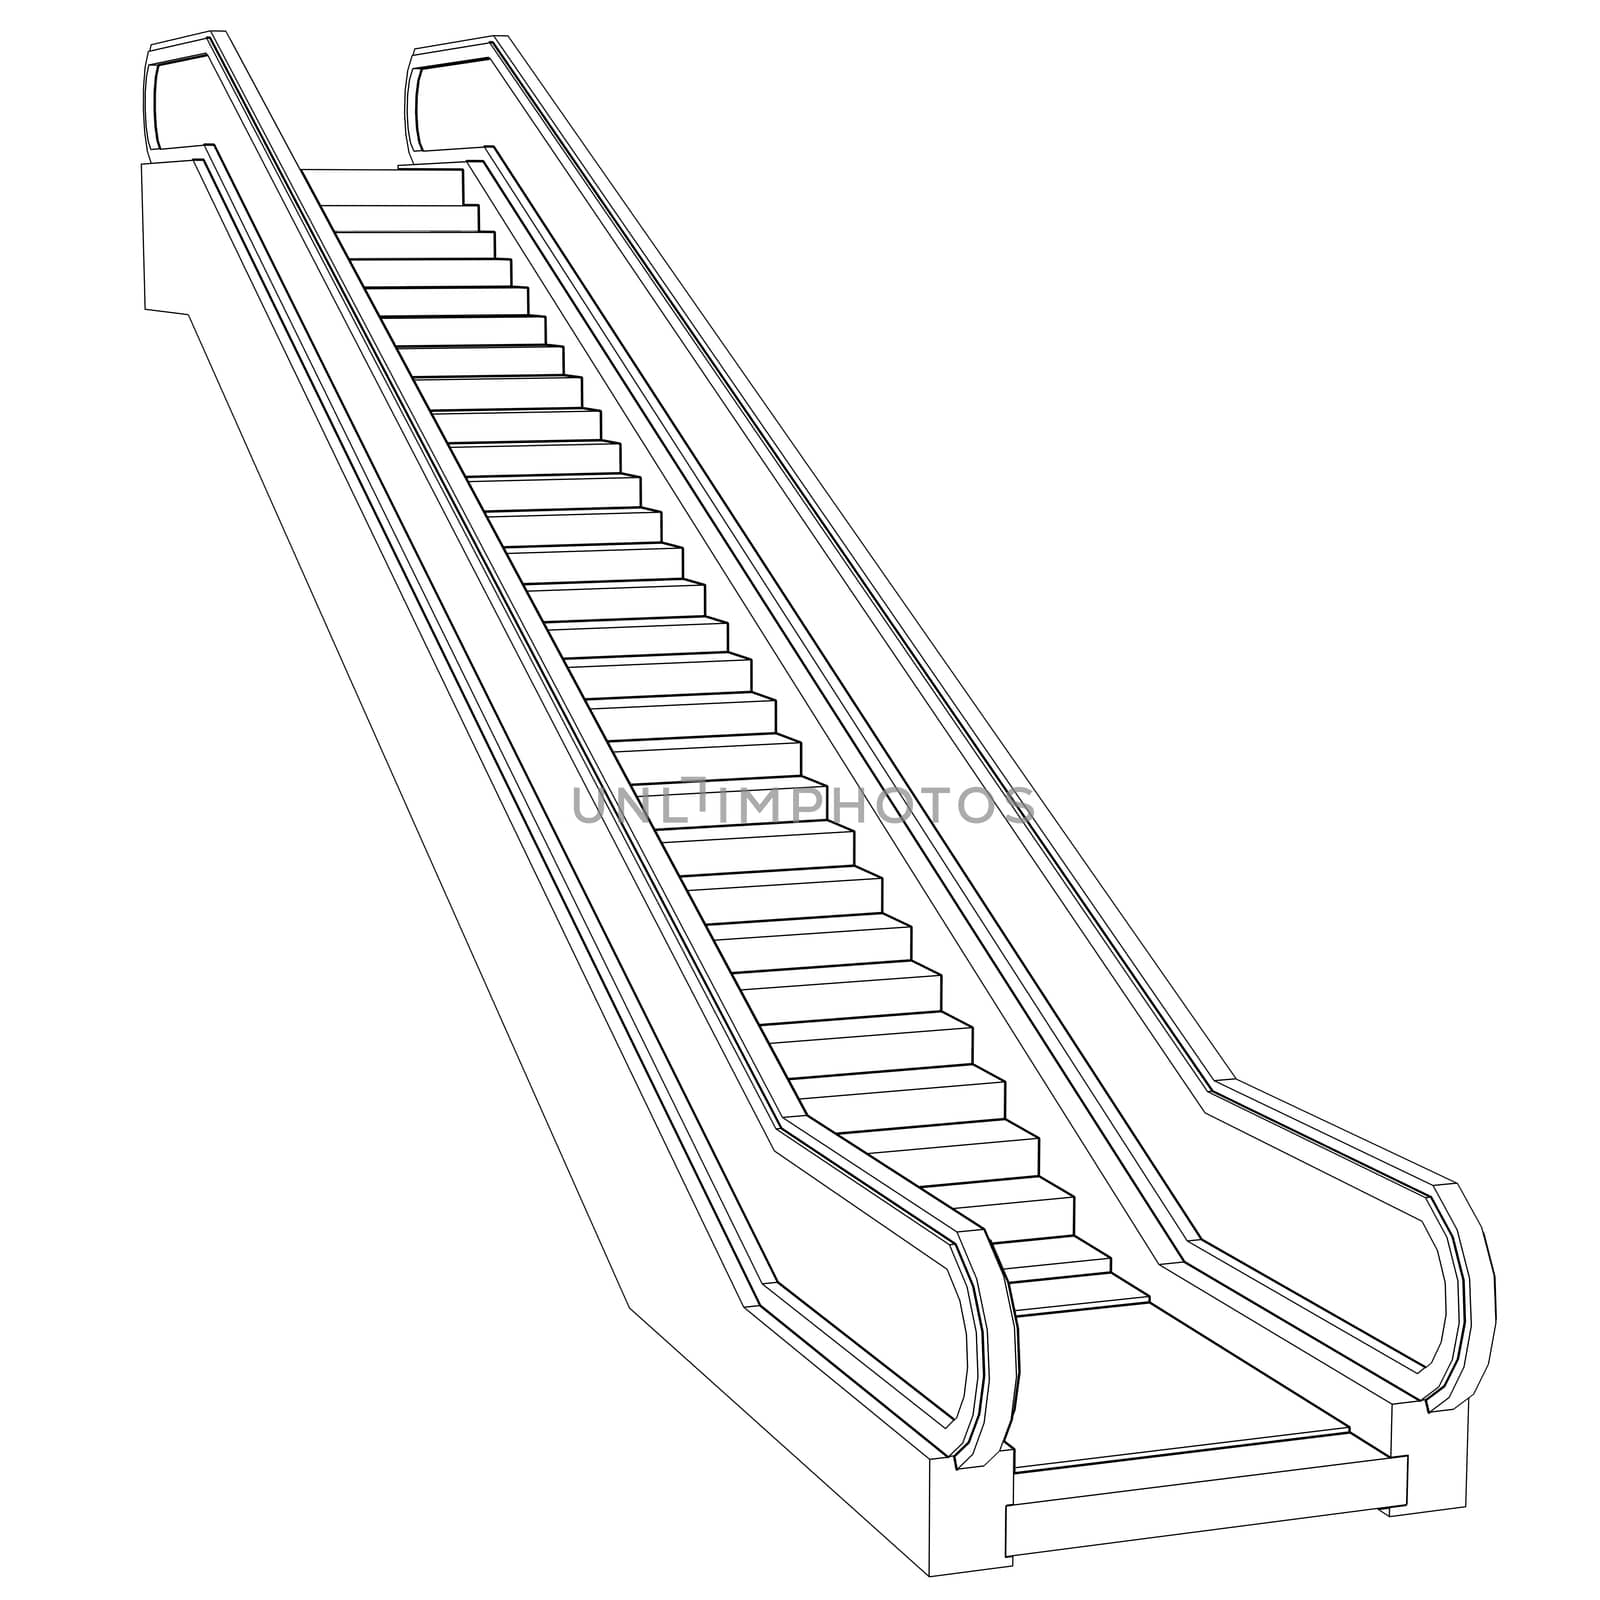 Sketch escalator. Wire frame render on white background